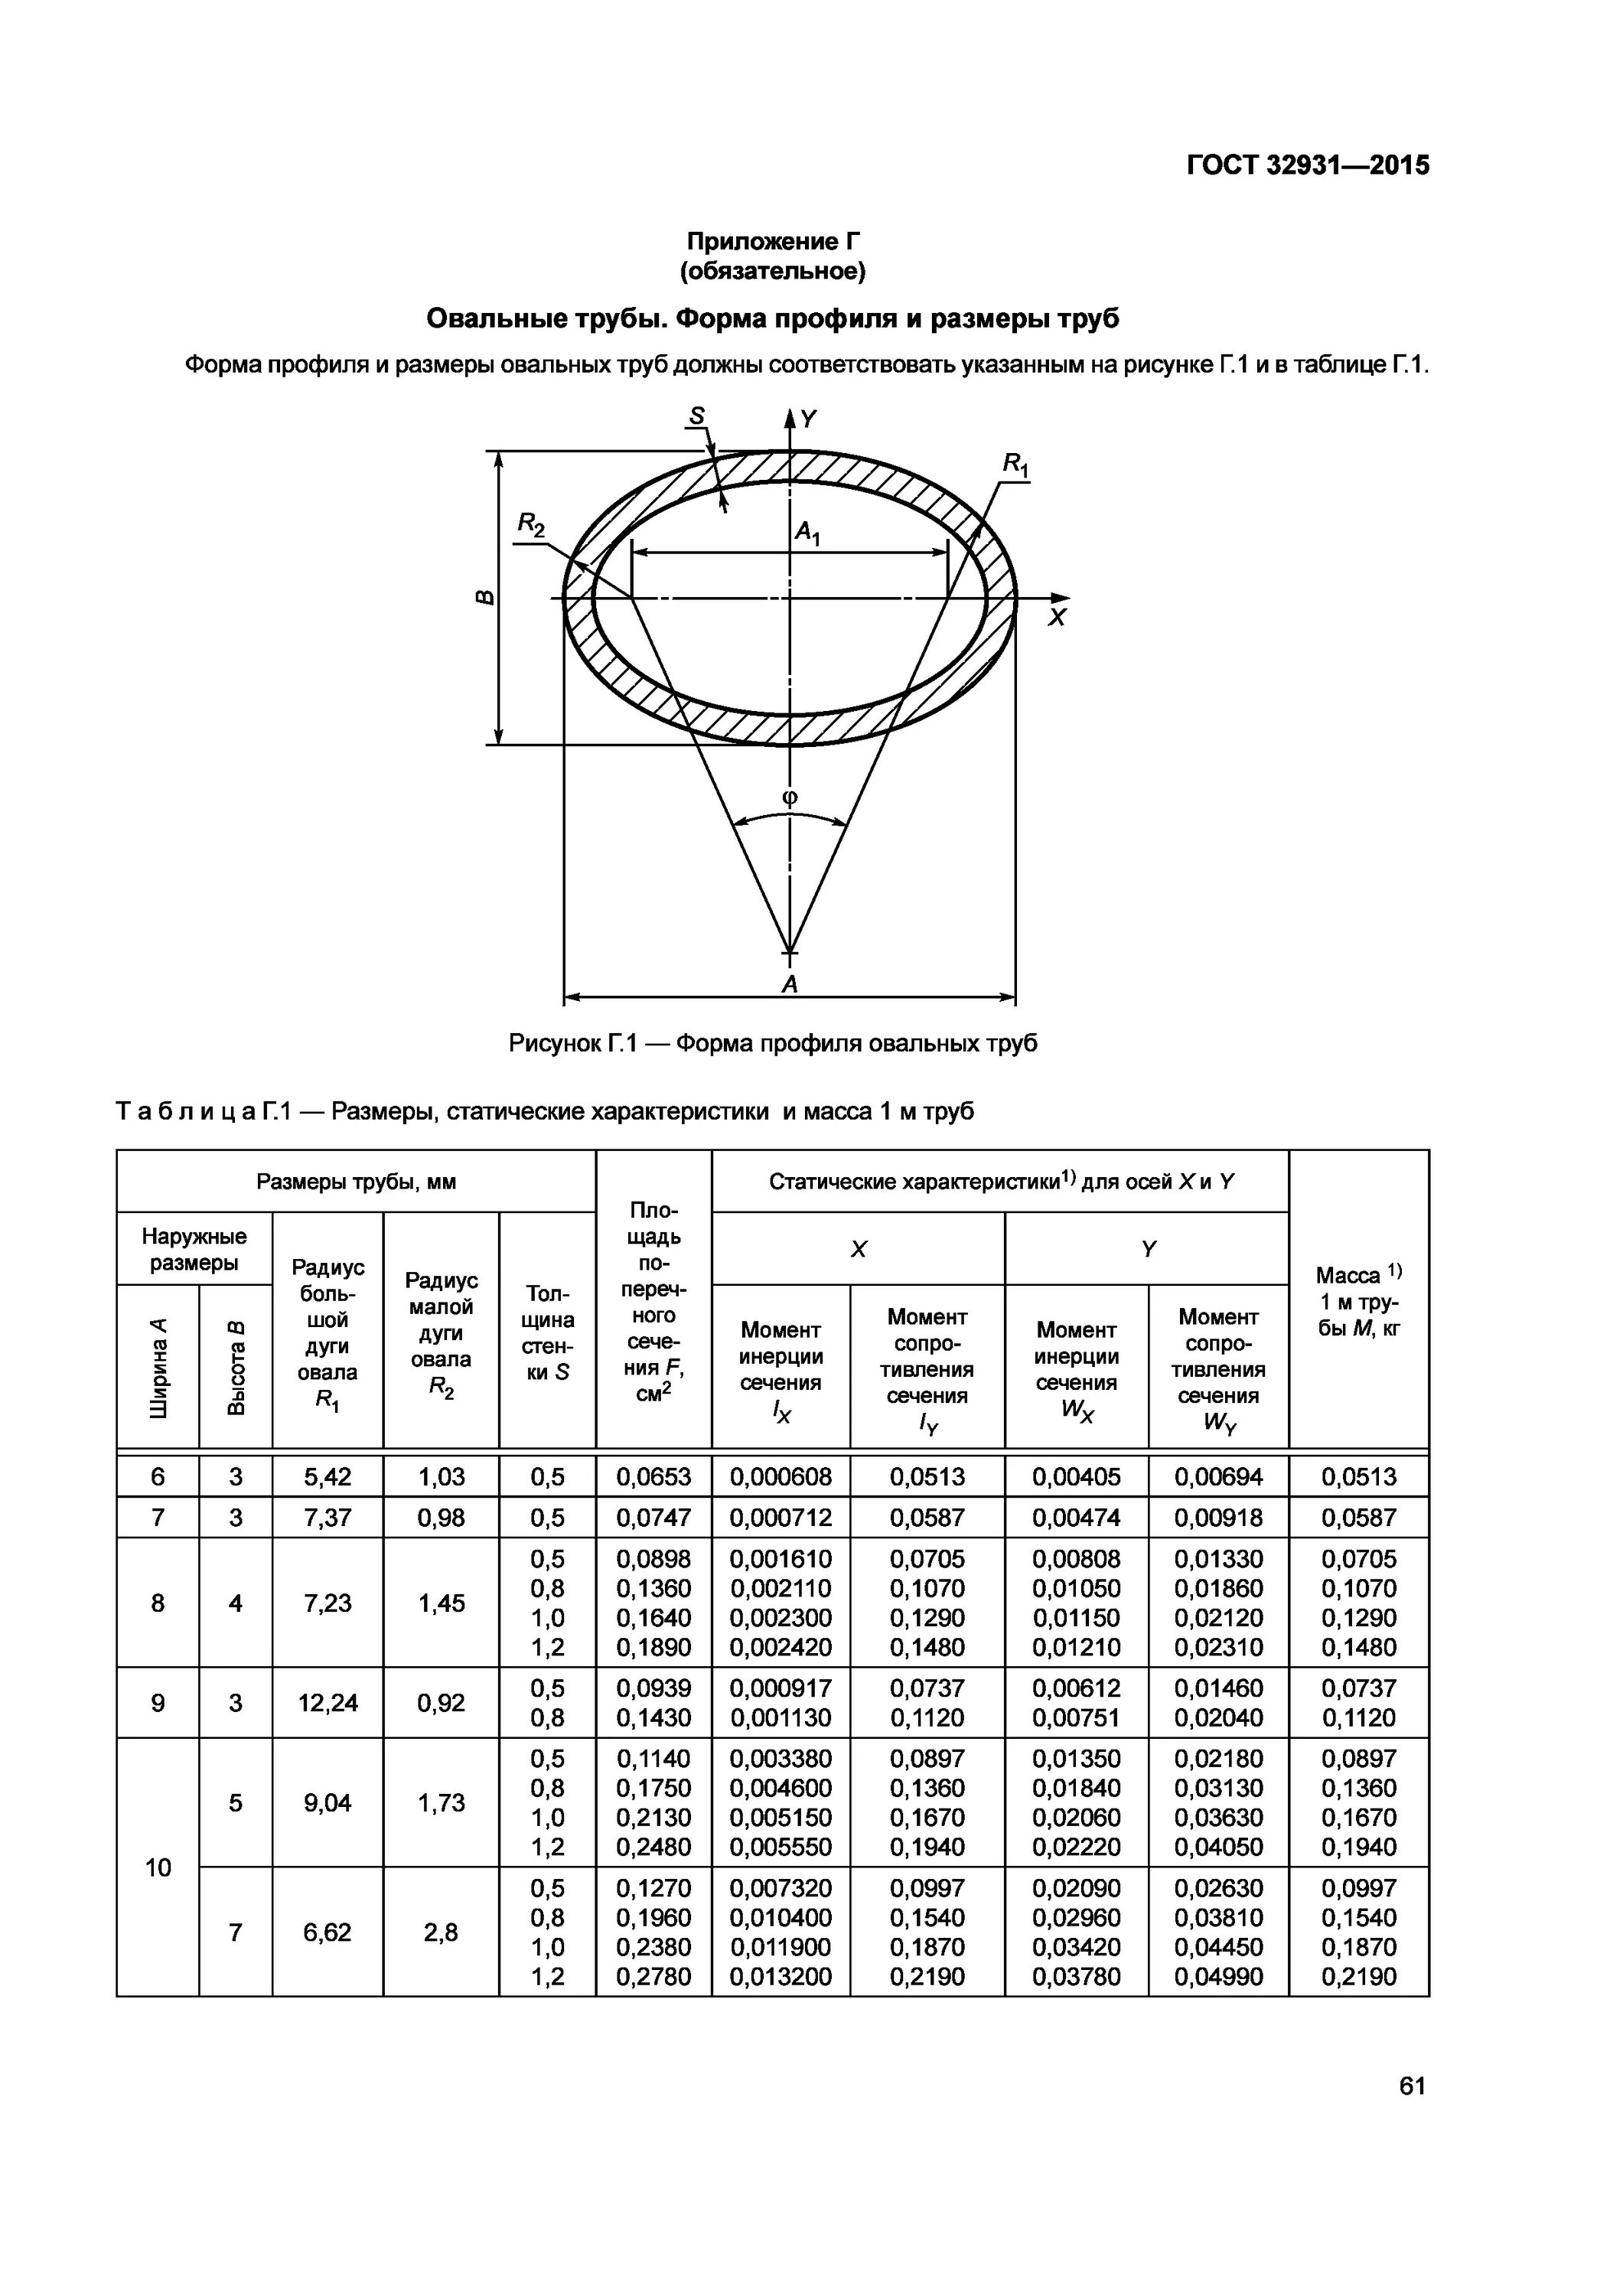 ГОСТ 32931-2015 трубы стальные профильные для металлоконструкций. Таблица круглых труб металлических. Труба квадратная ГОСТ 32931-2015.